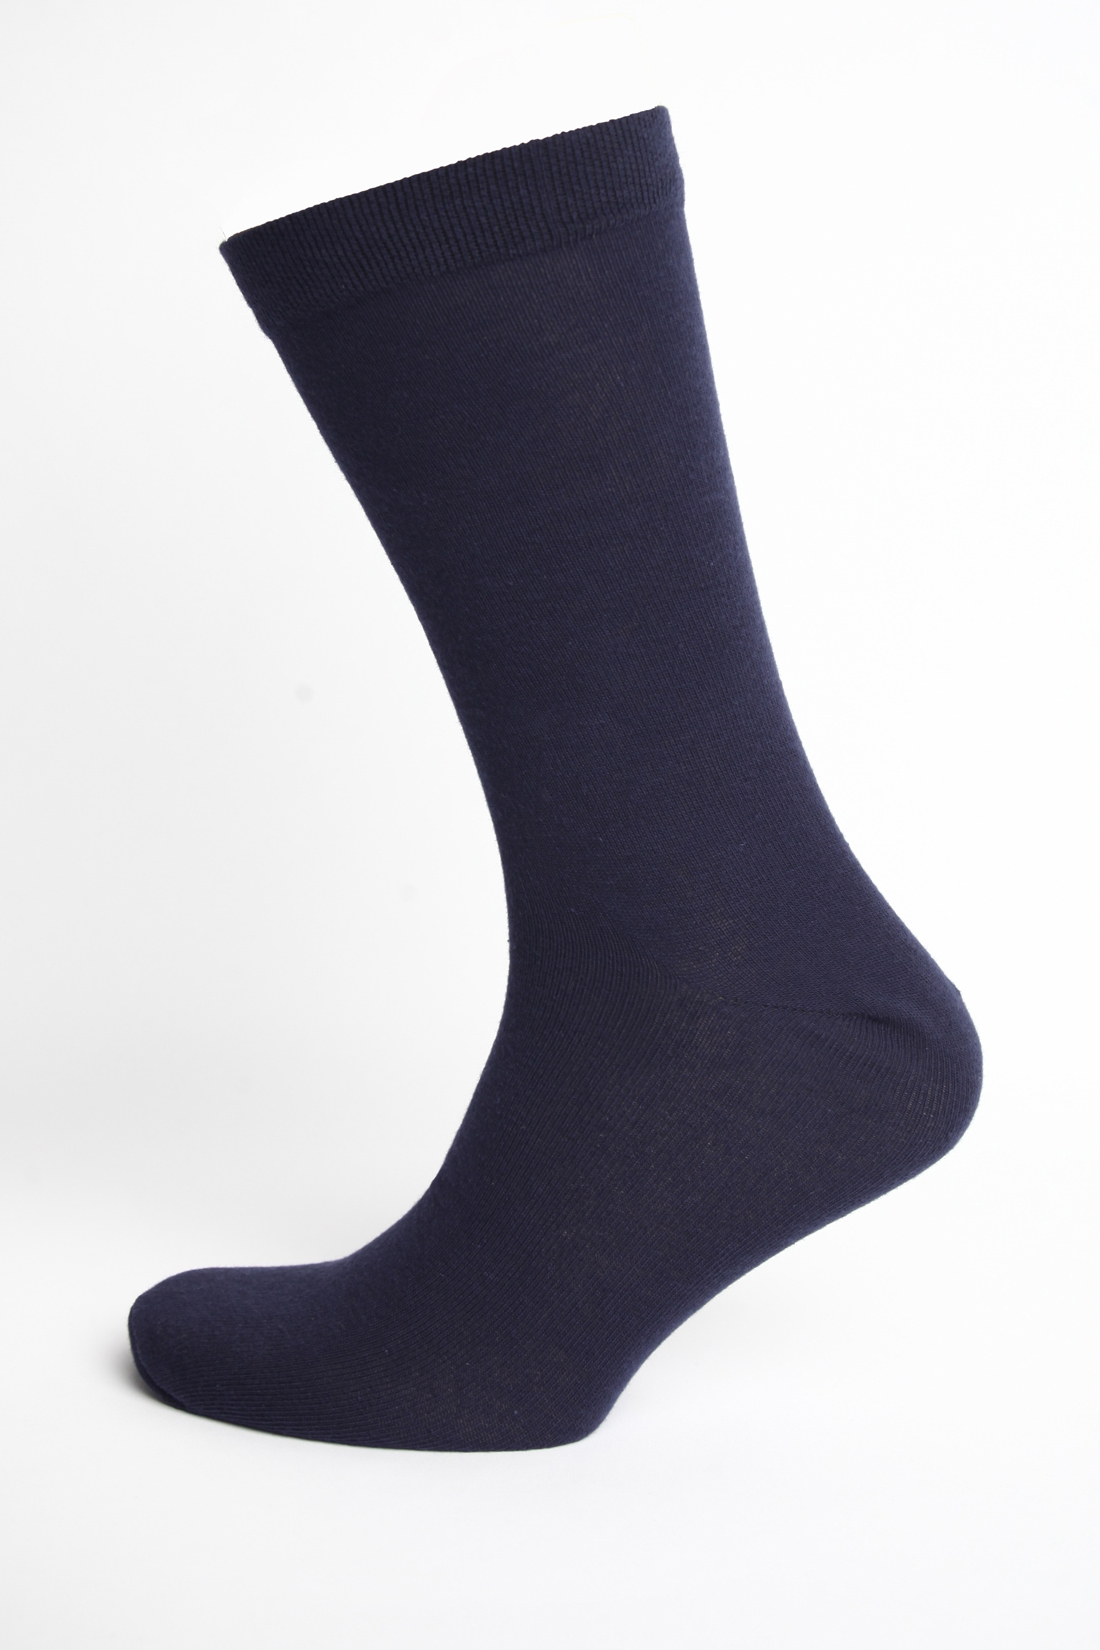 Мужские носки, 1 пара (арт. baon B891008), размер 43/45, цвет синий